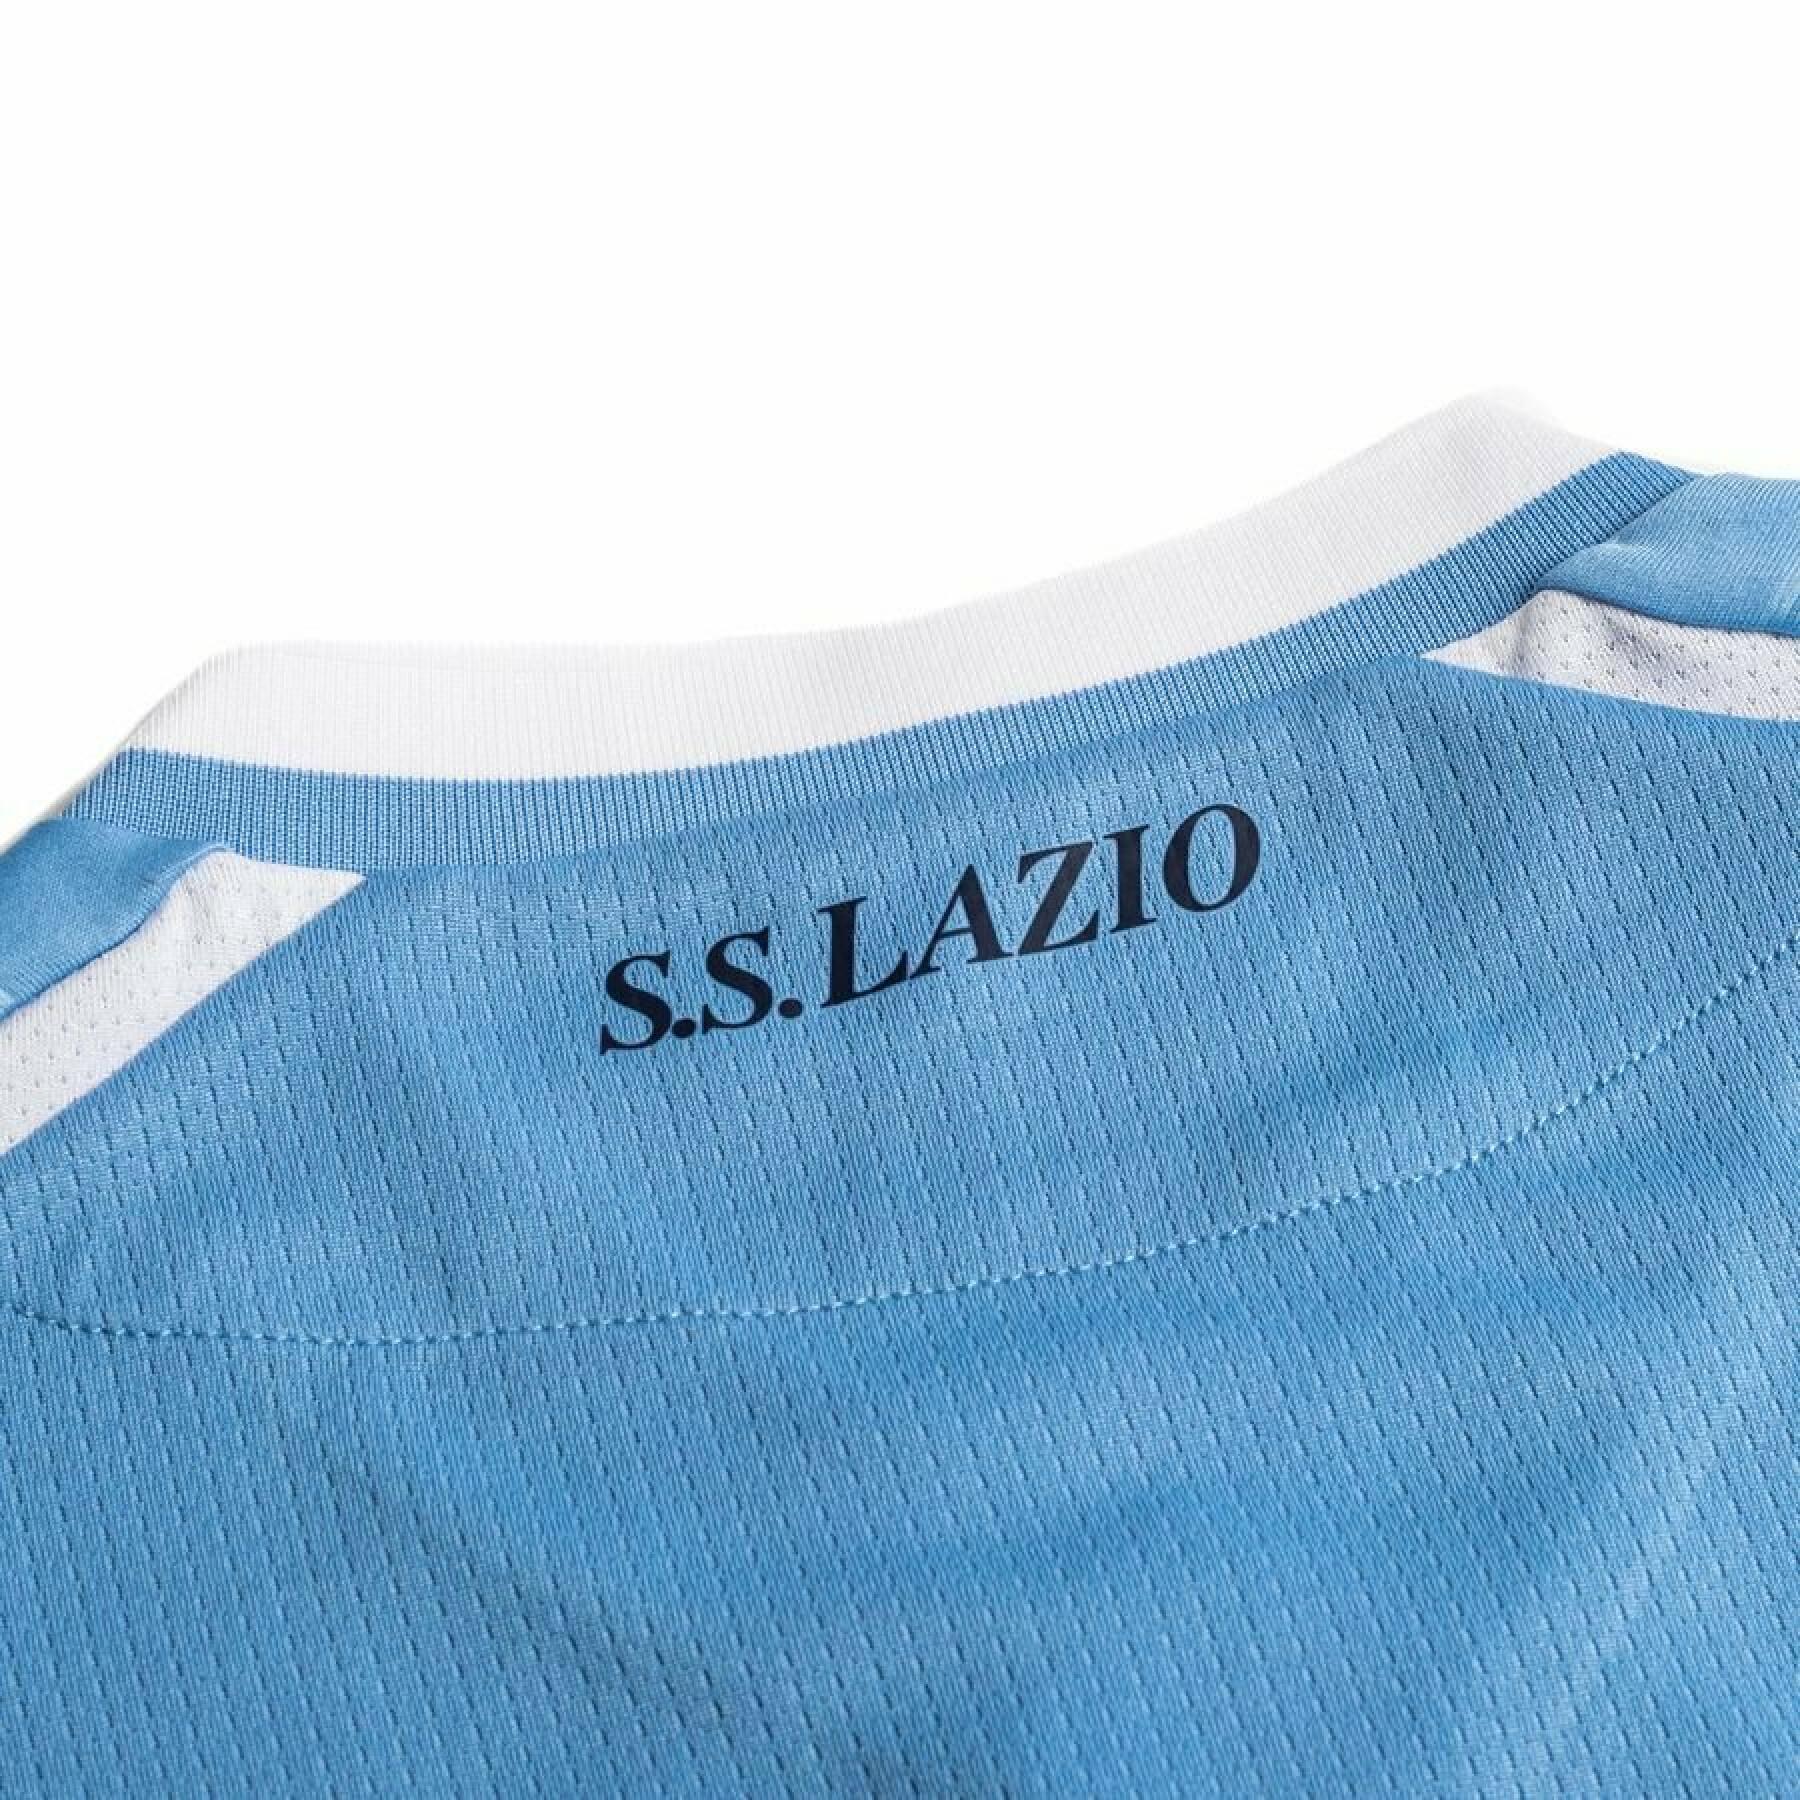 Home jersey Lazio Rome 2021/22